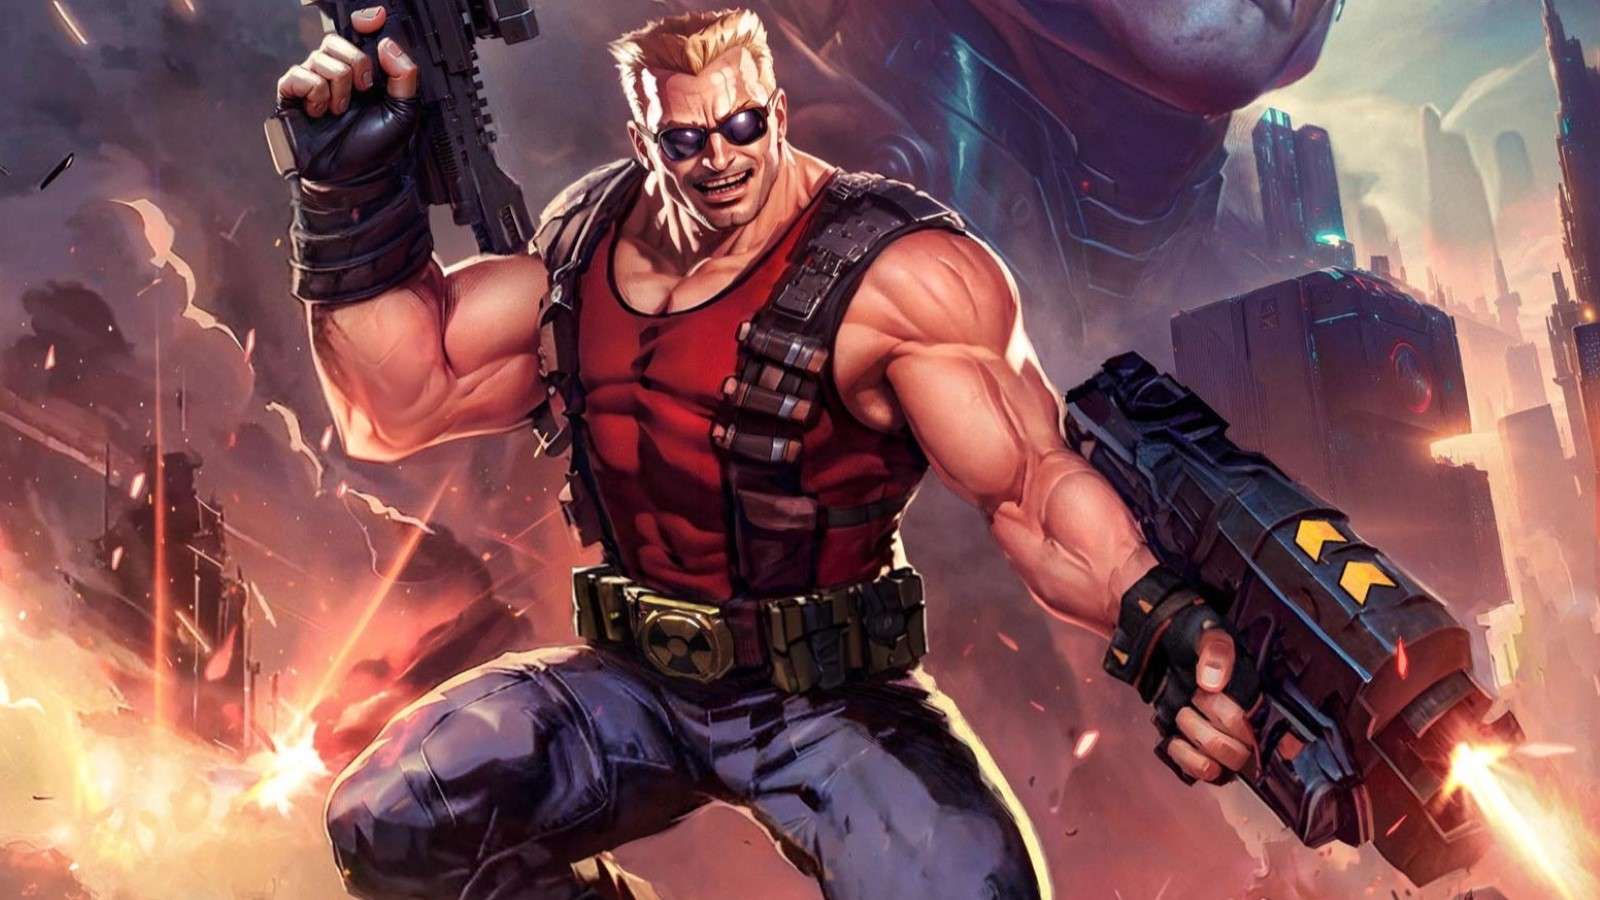 Duke Nukem Remaster called out for AI art